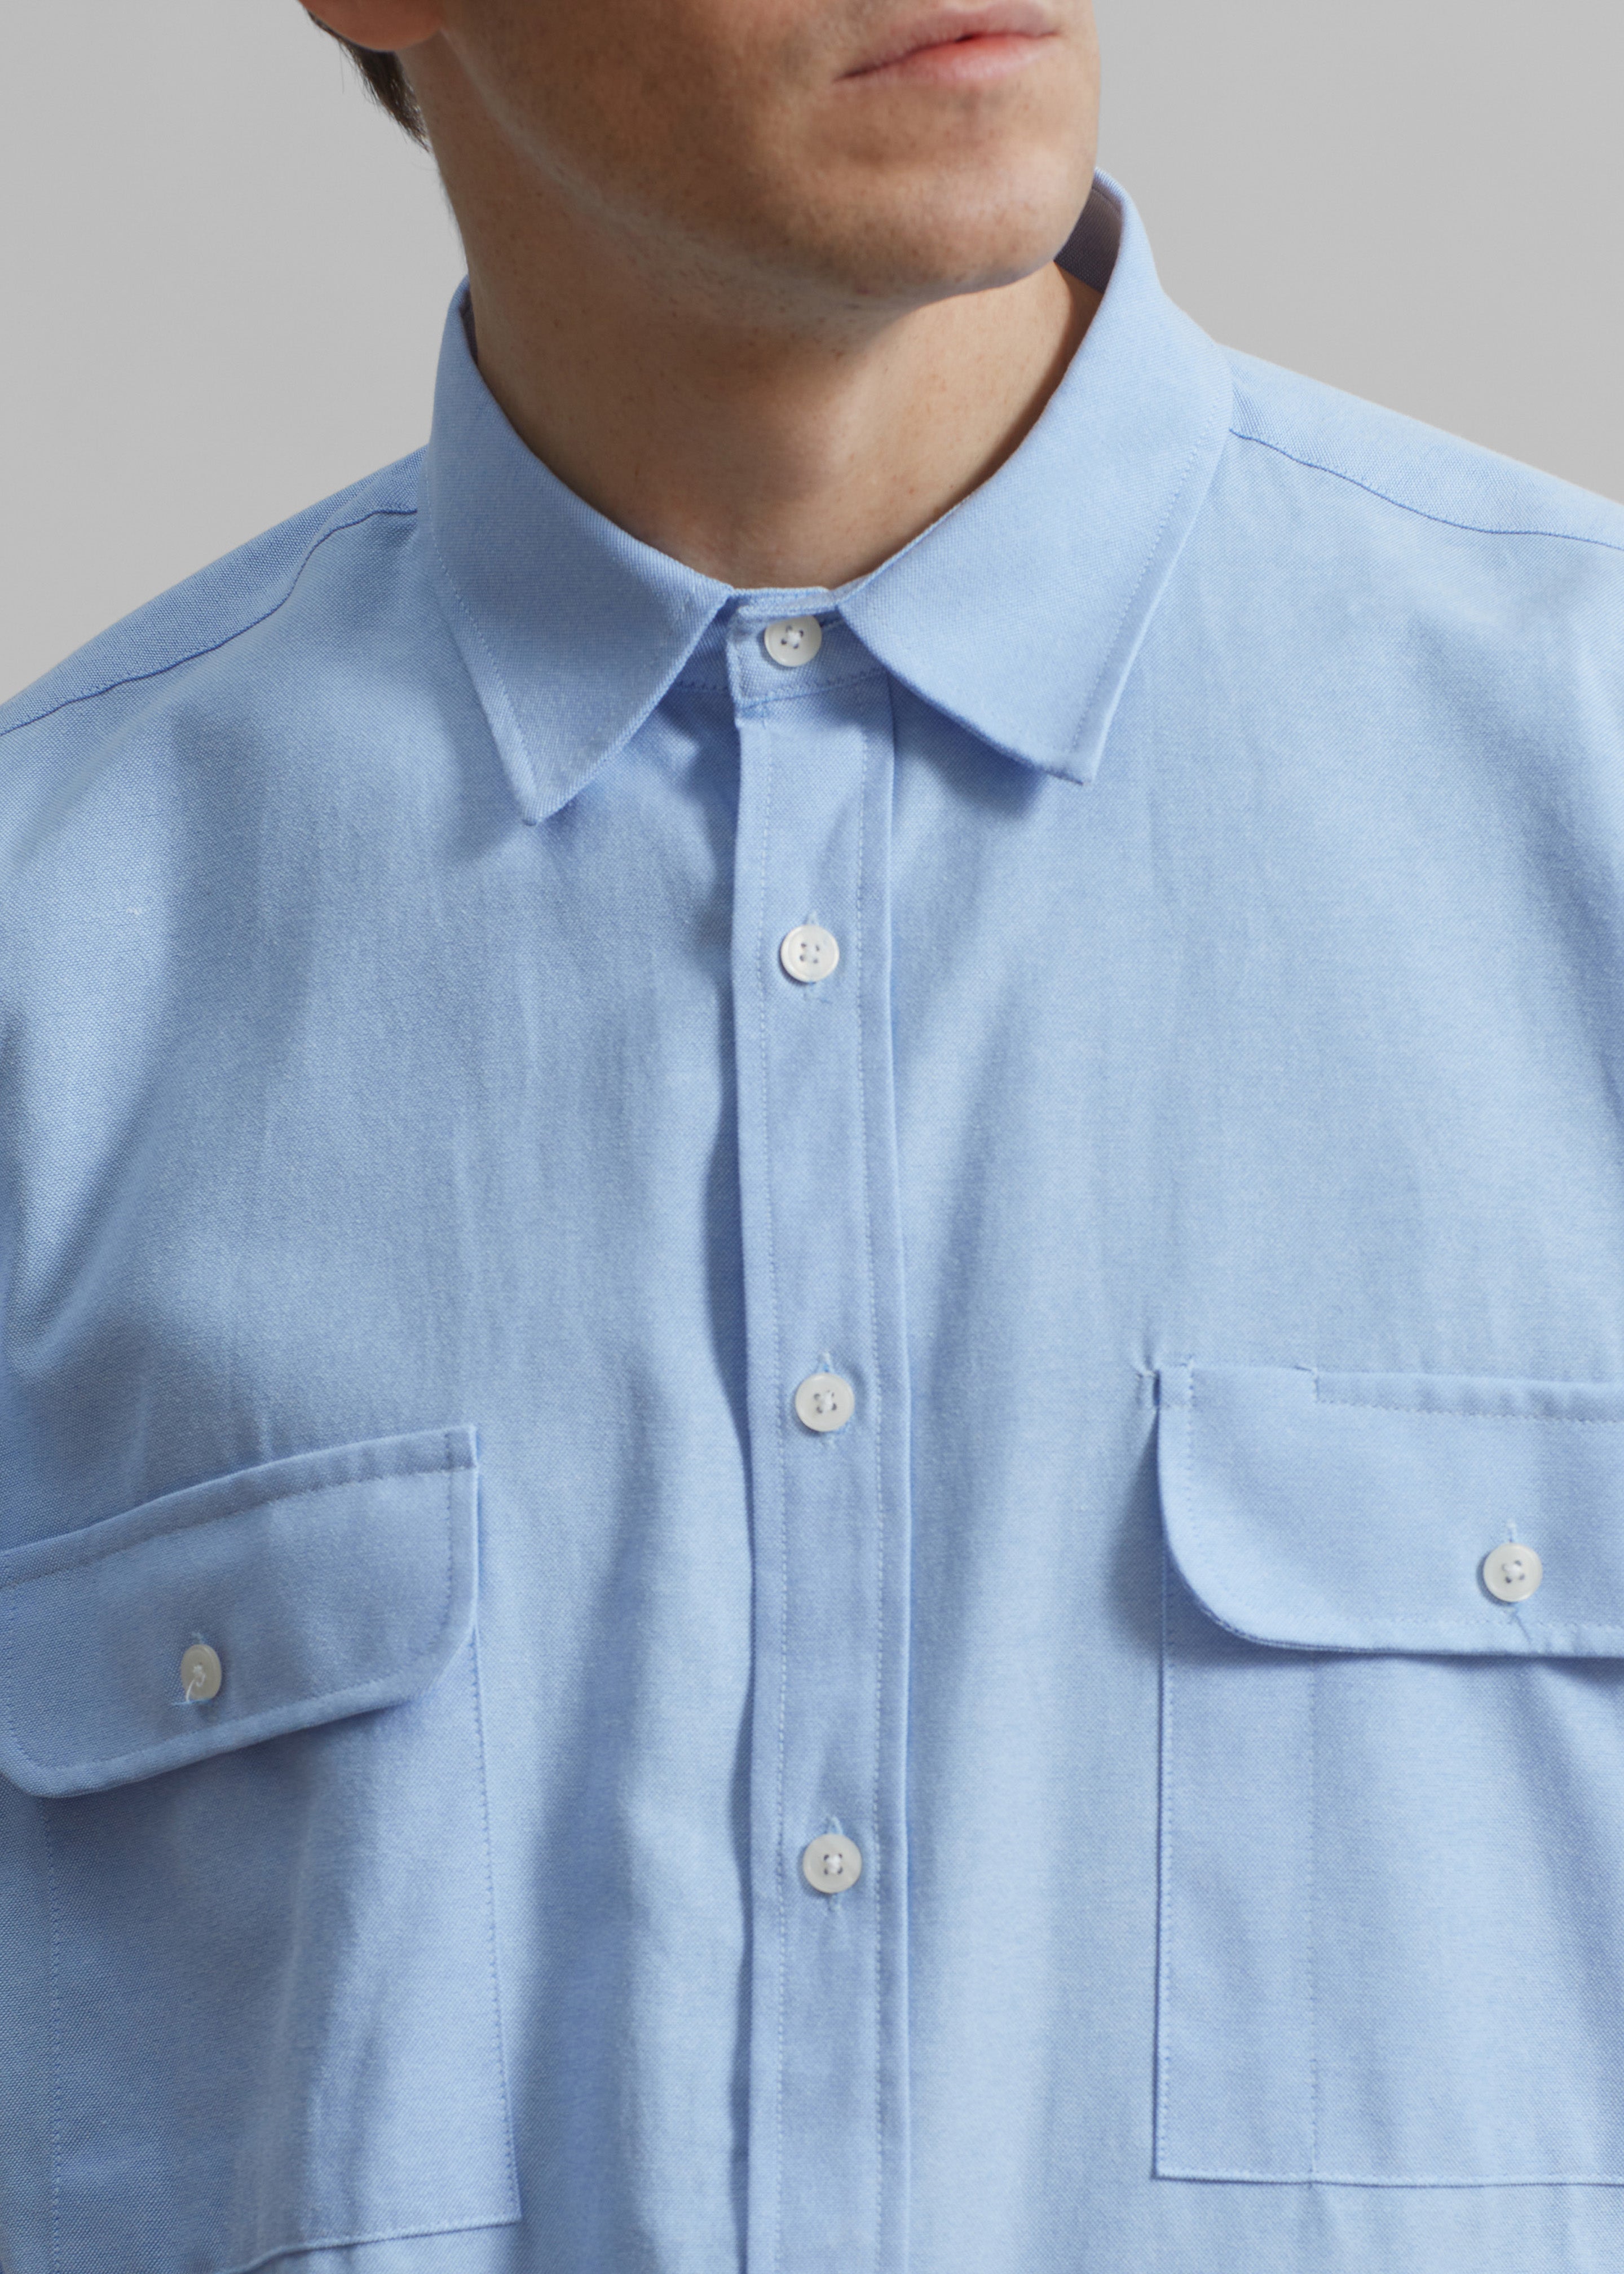 Alexander Button Up Shirt - Blue - 6